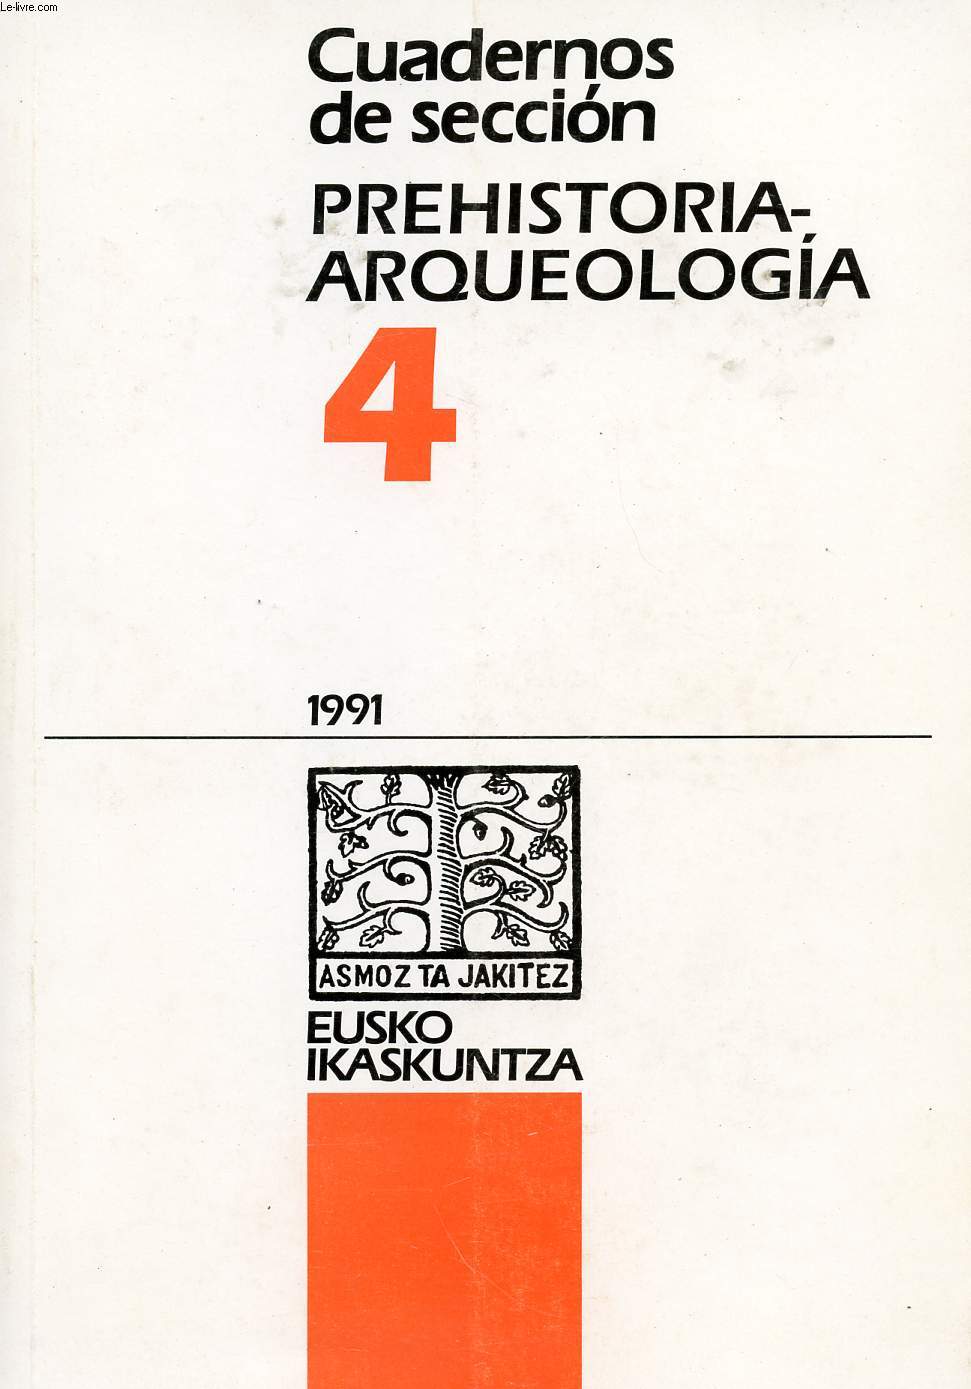 CUADERNOS DE SECCION PREHISTORIA-ARQUEOLOGIA, 4